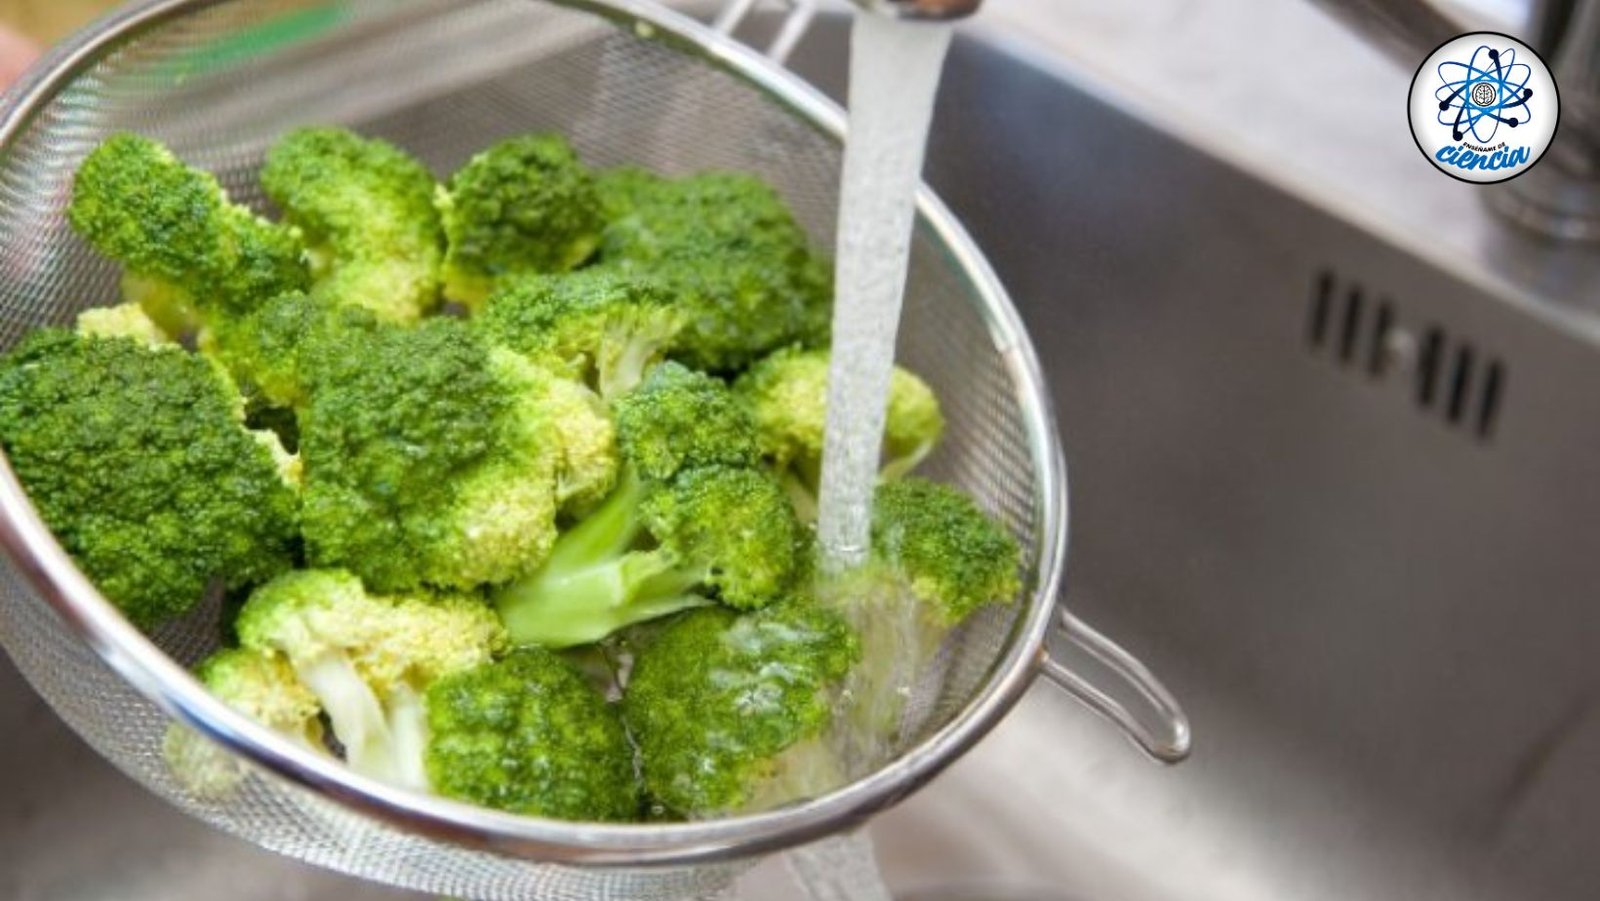 ¡Lavado y Desinfección Perfecta para un Brócoli Sano y Seguro!